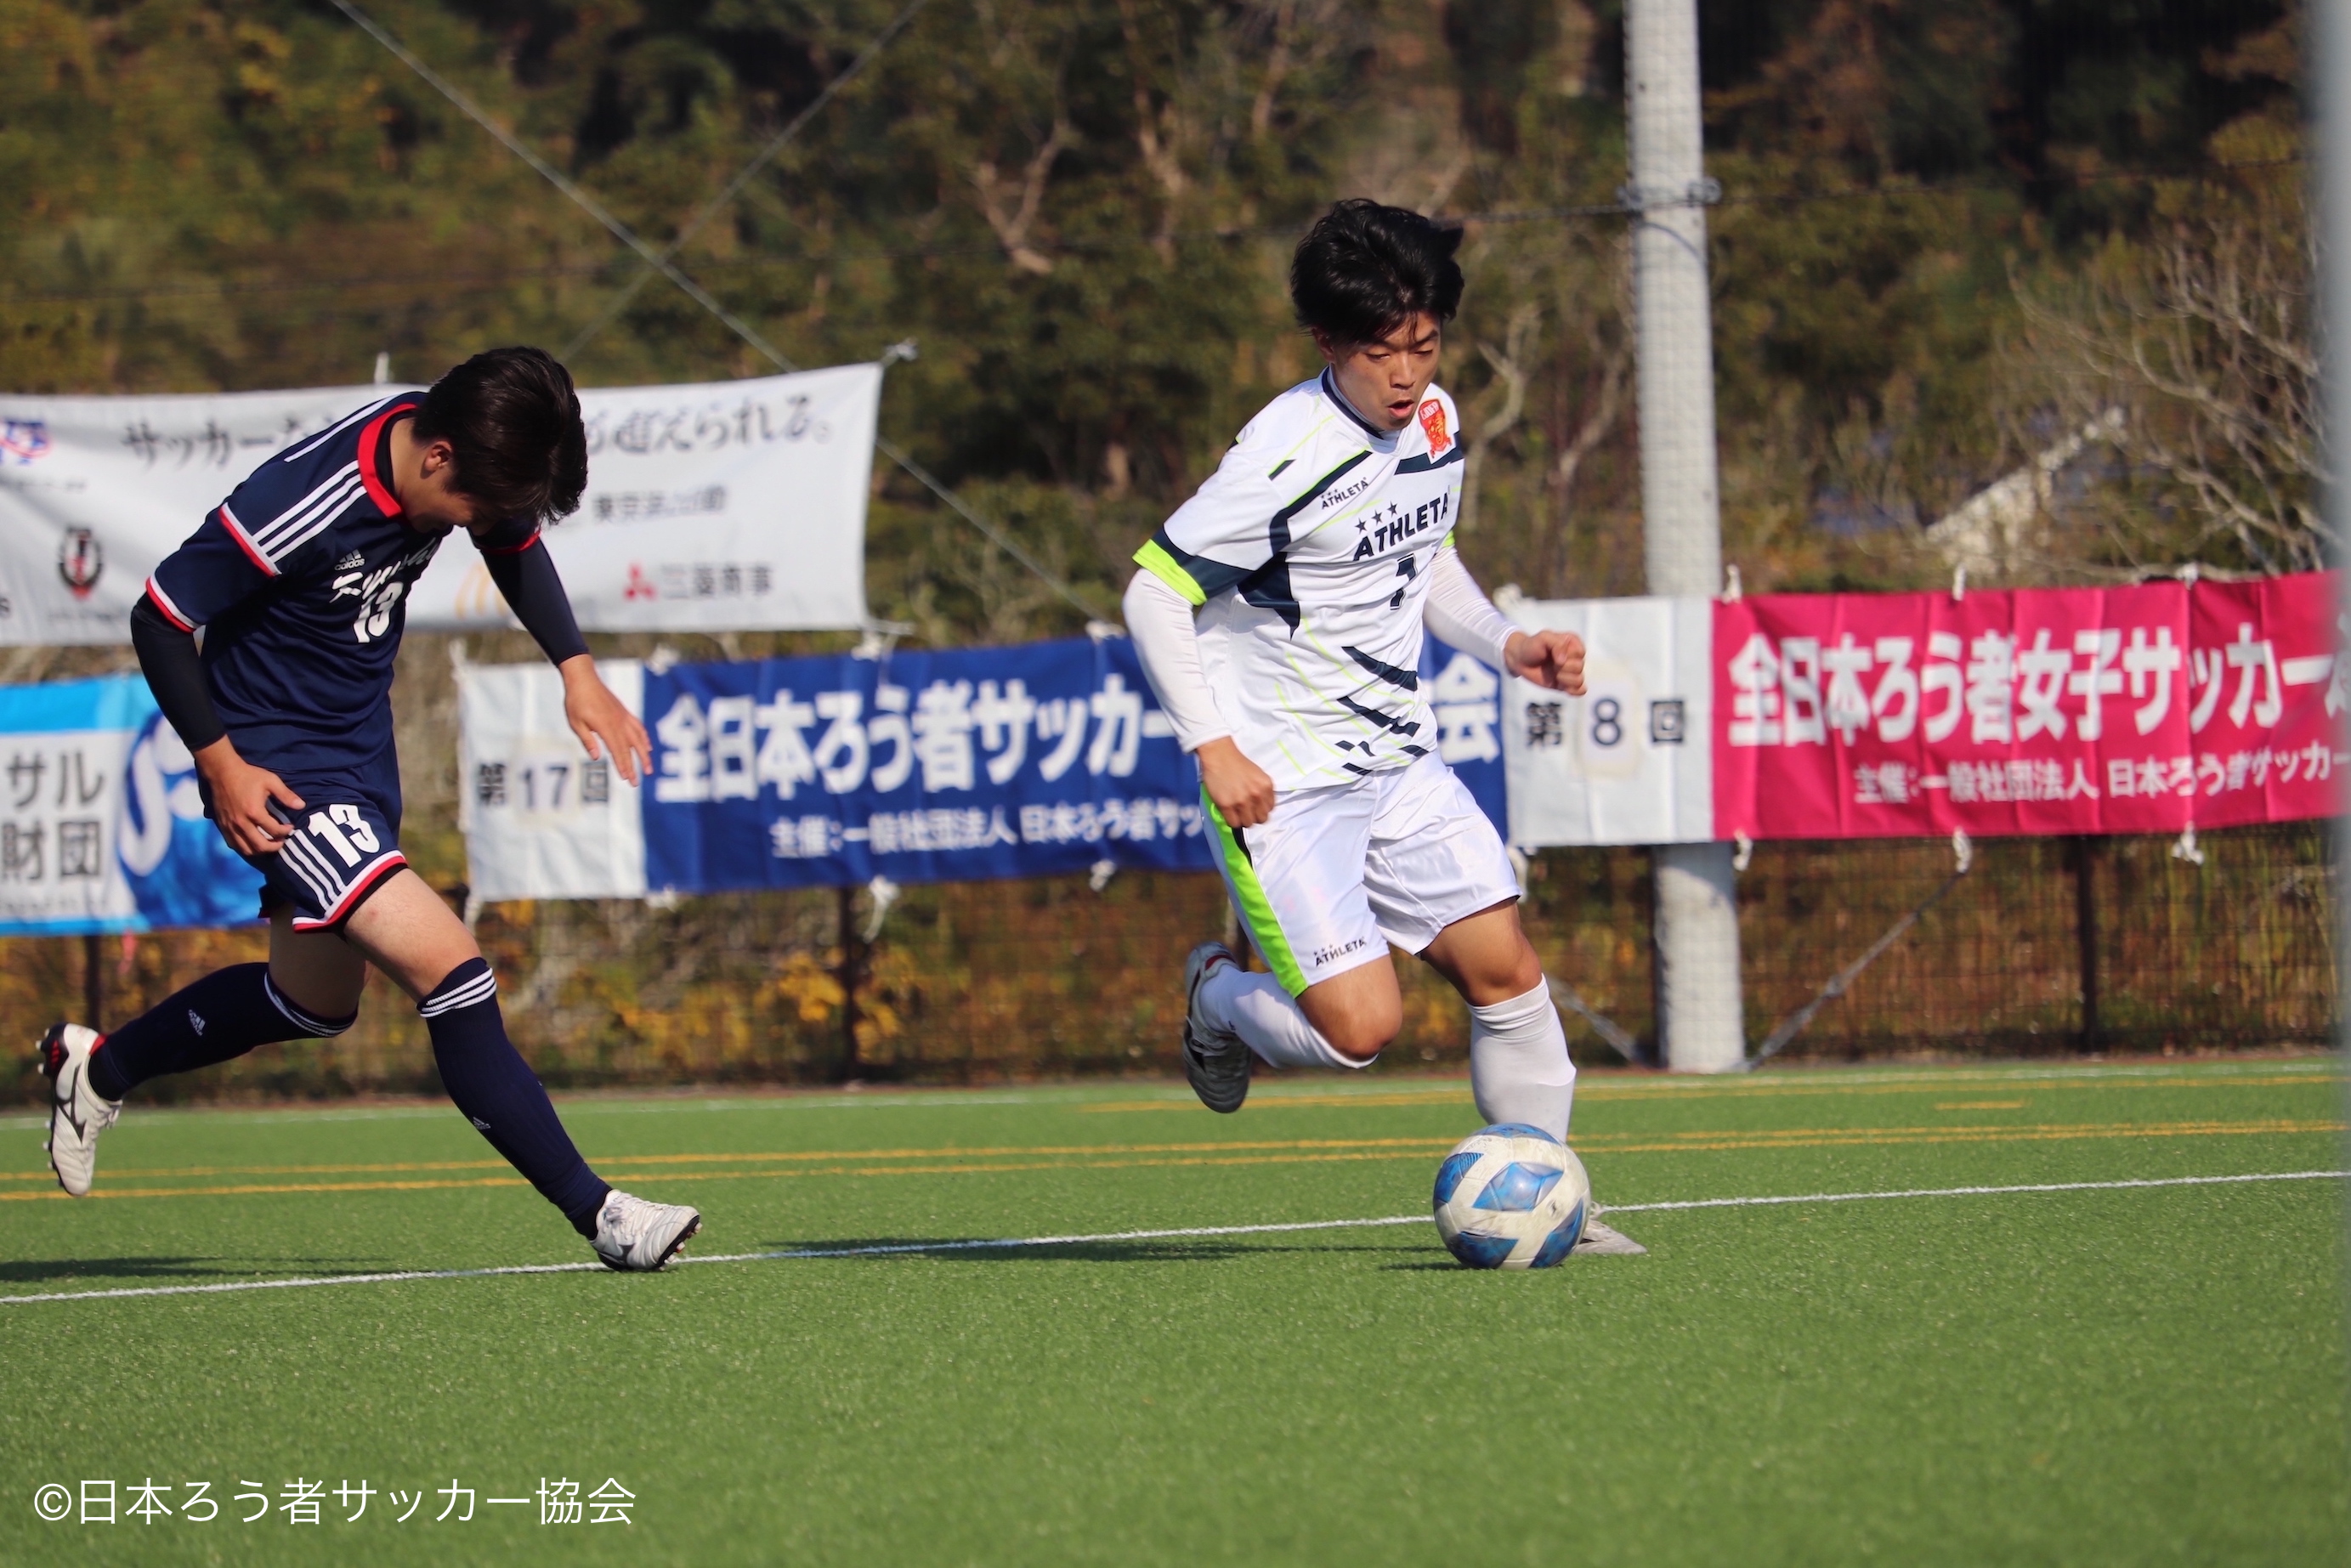 九州選抜対東日本選抜の試合の様子。２人の選手がボールを追いかけている。